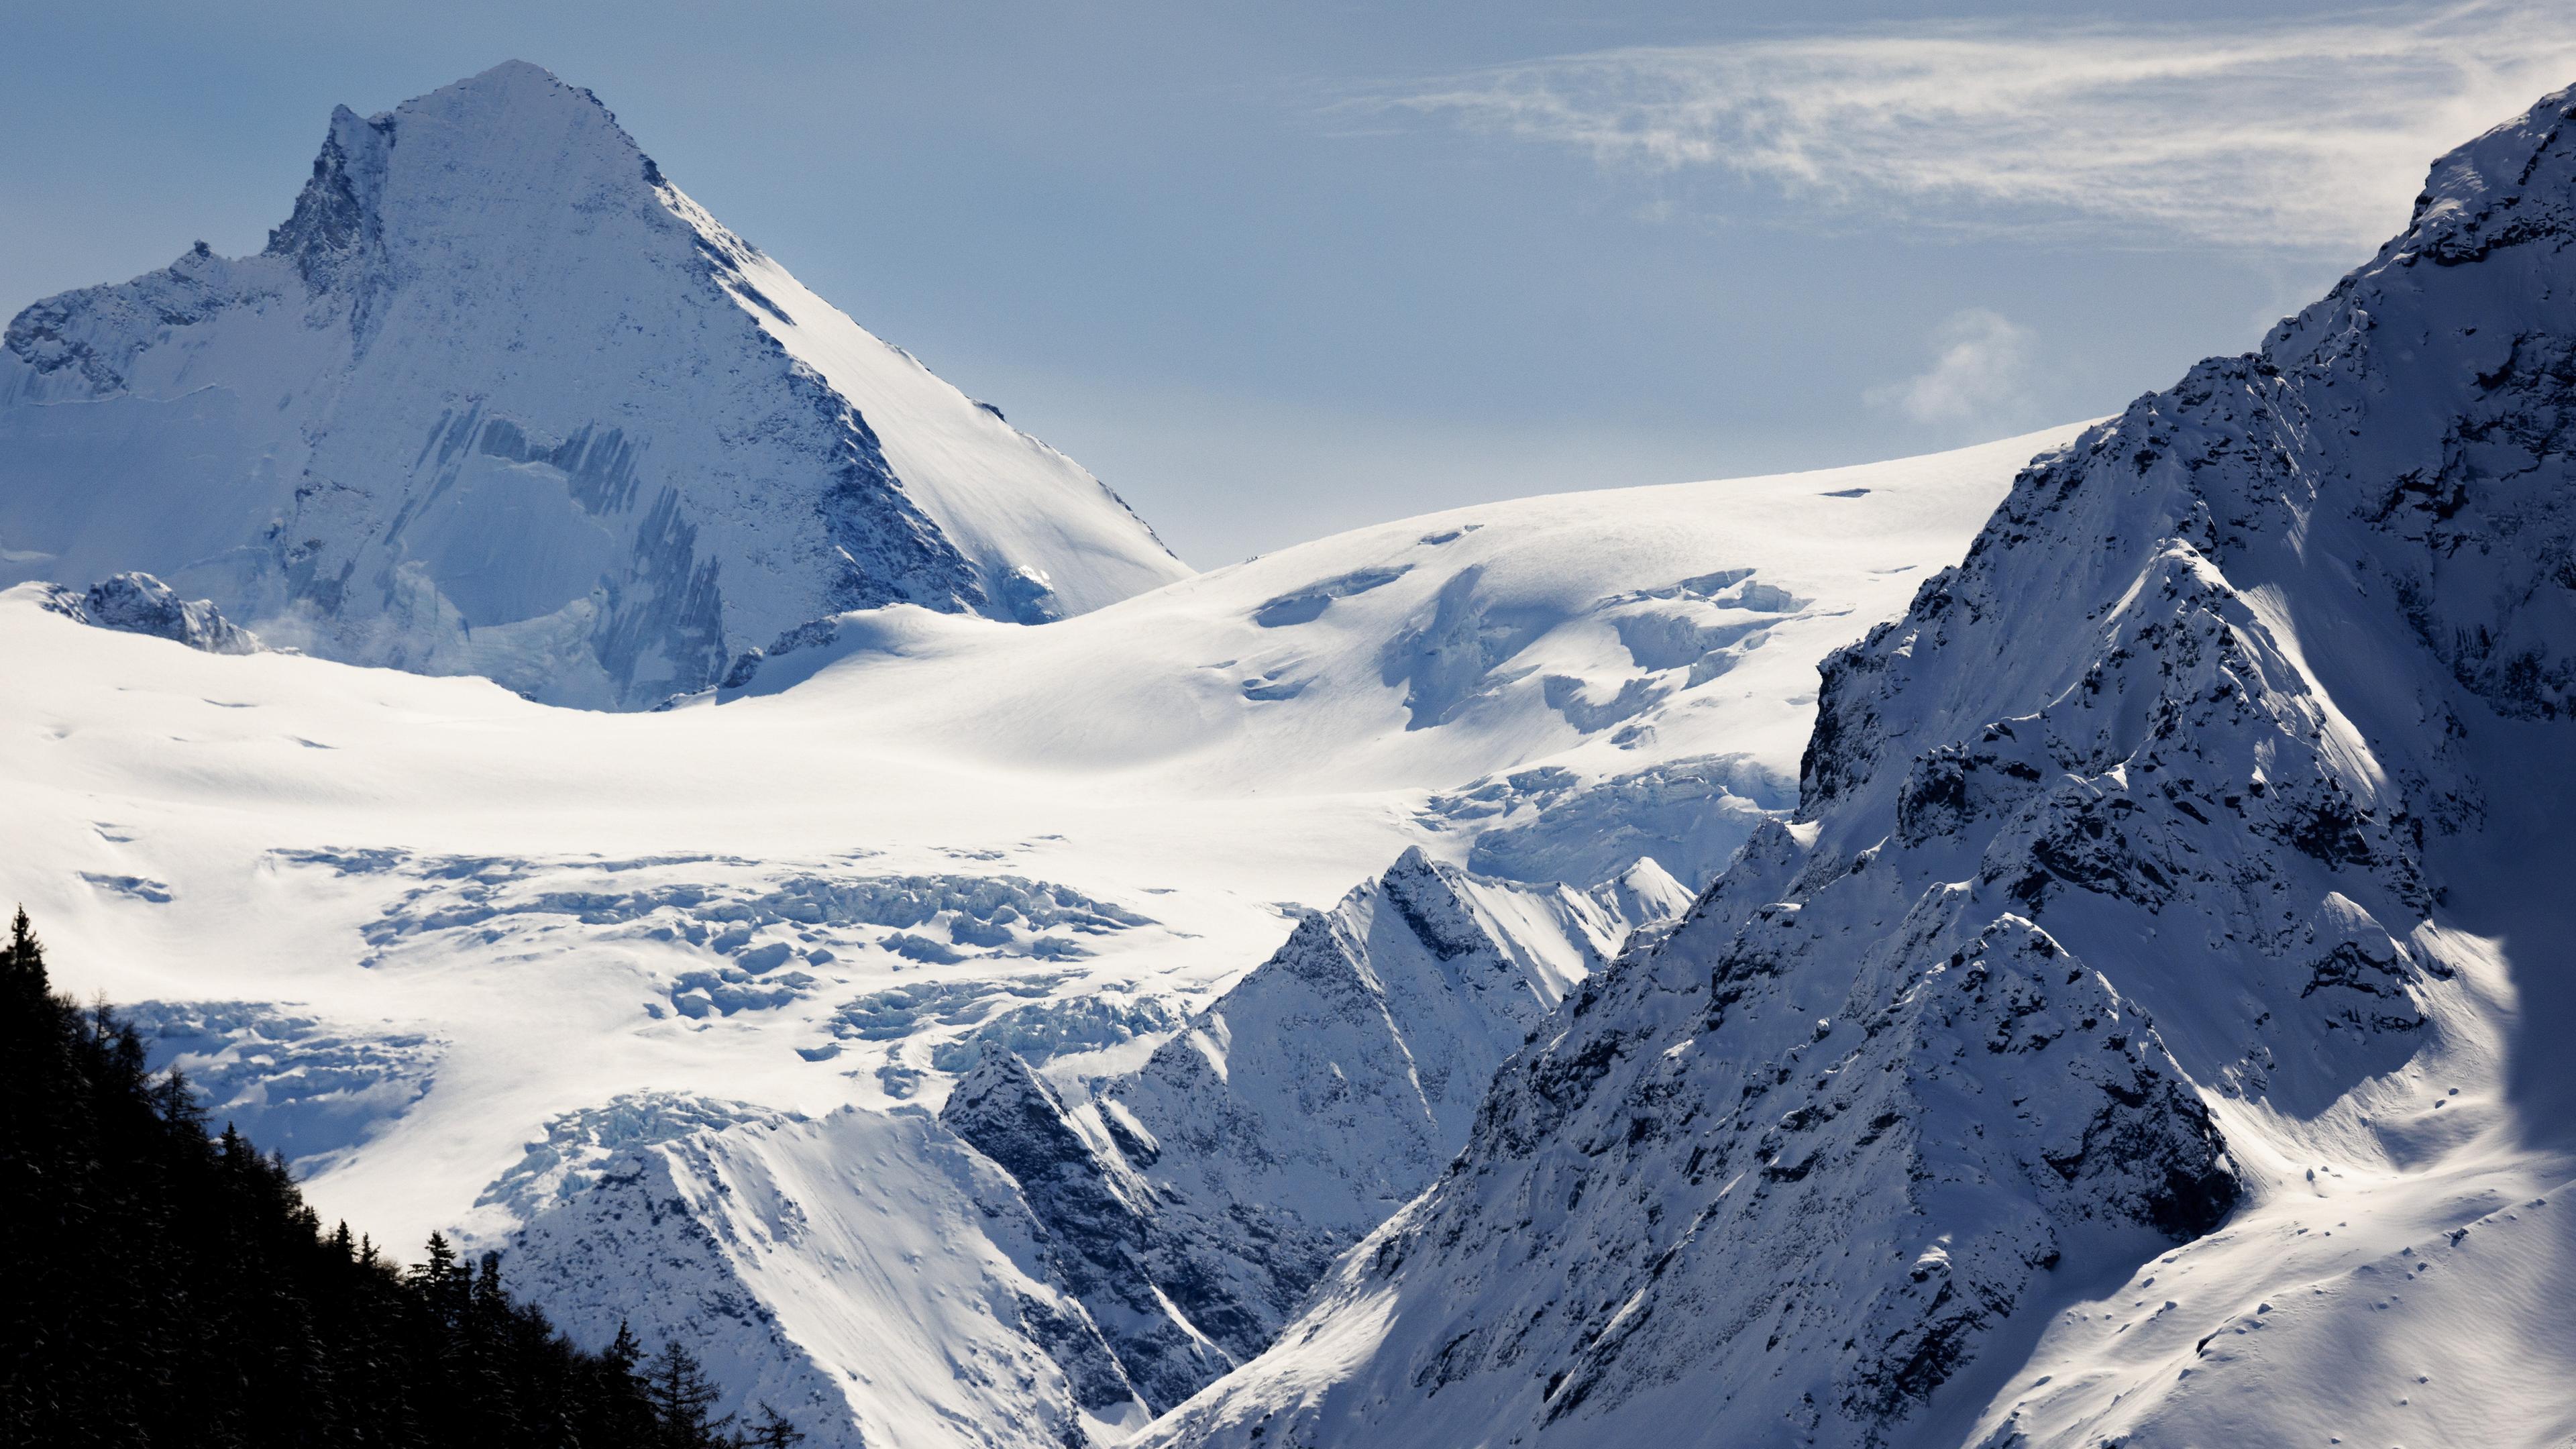 Das Bild zeigt den Berg Tete Blanche in den Schweizer Alpen